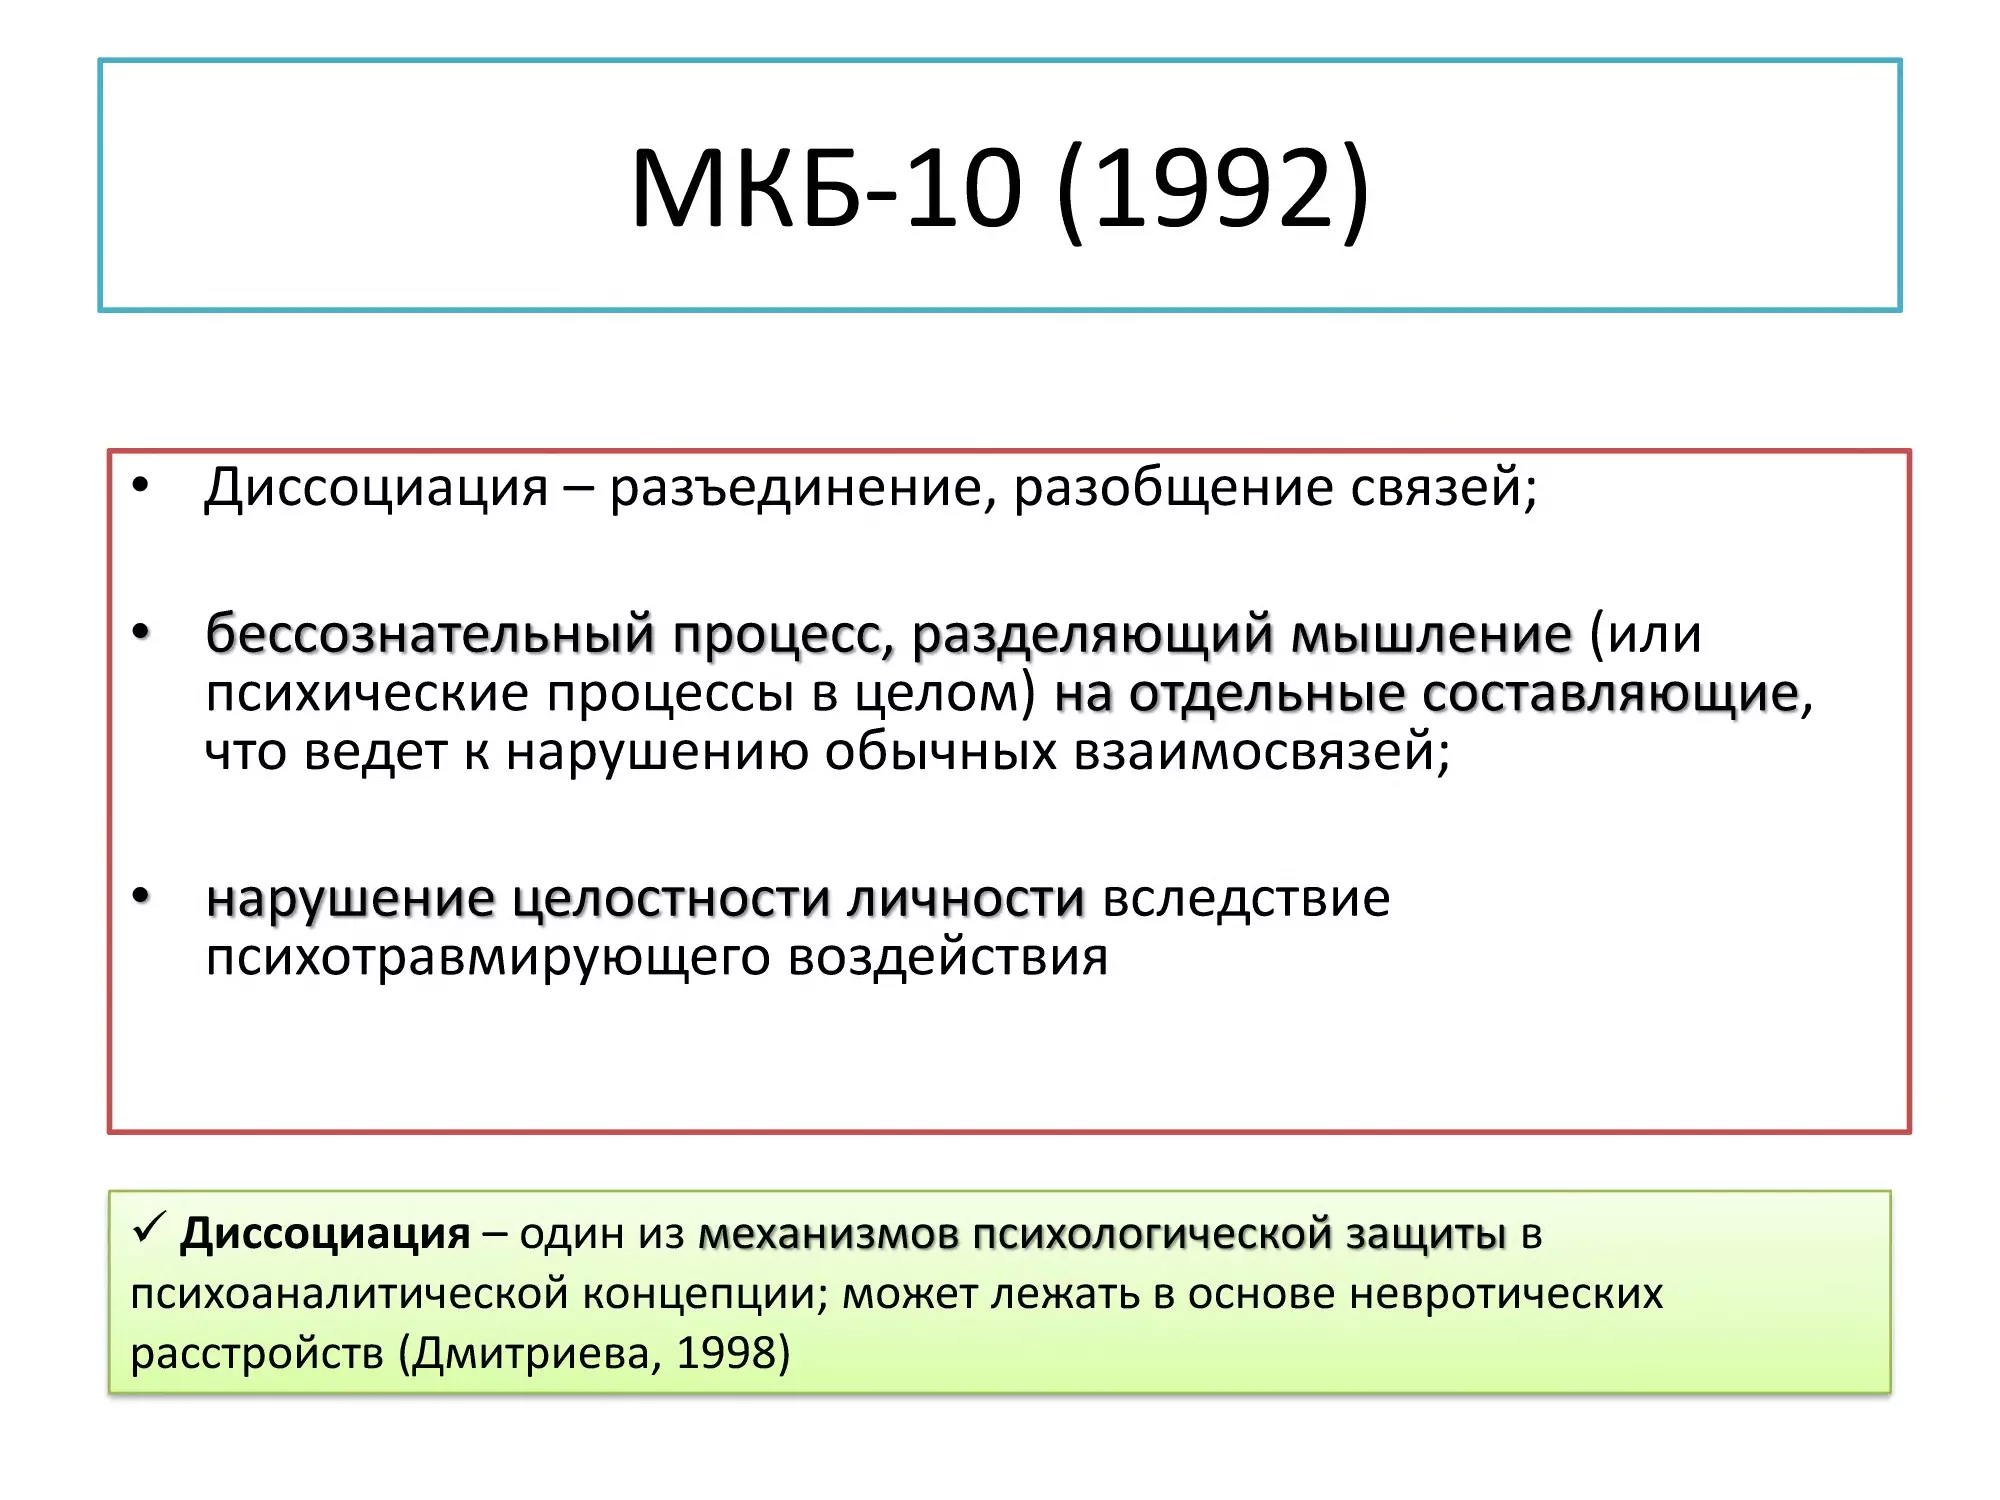 Слайд 24, МКБ-10 (1992)